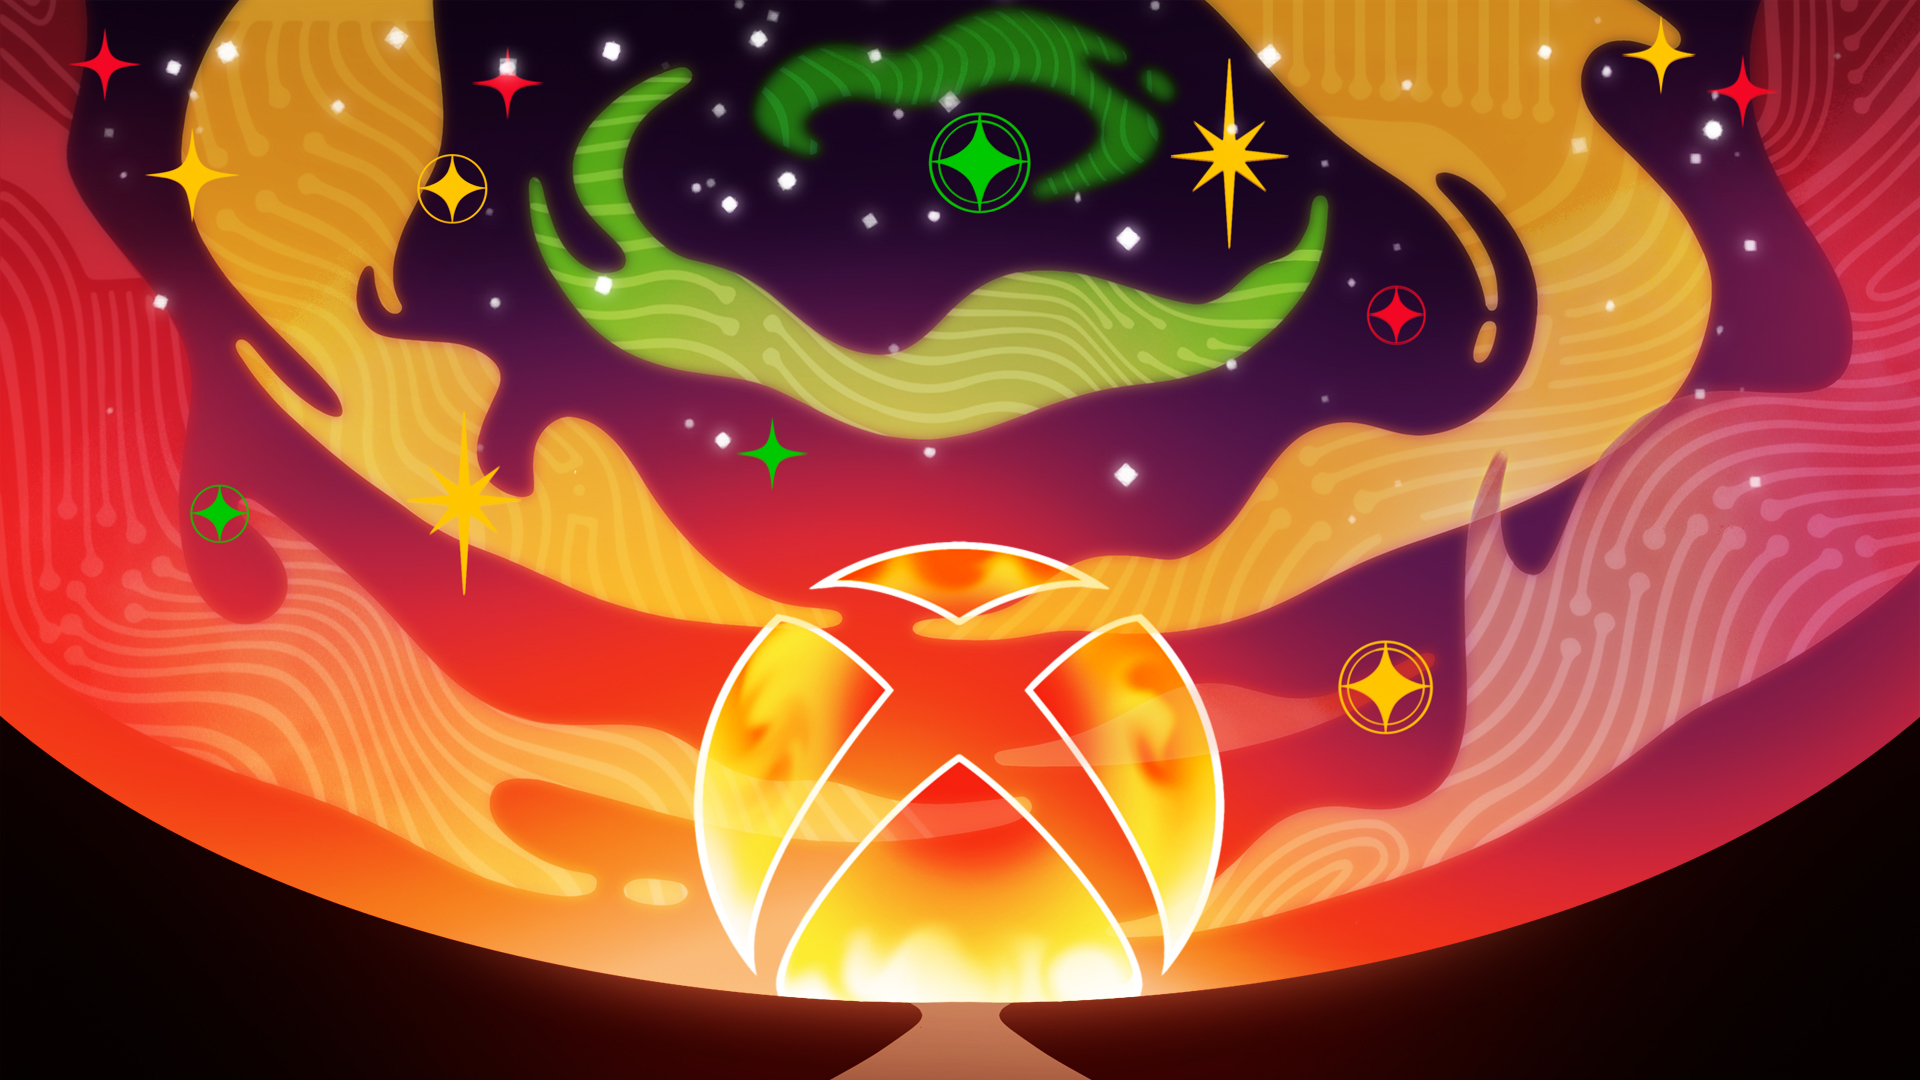 Das stilisierte Xbox-Logo zur Feier des Black History Month mit einem Xbox-Logo mit einem roten und orangefarbenen Sonnenuntergang über einem braunen und schwarzen Silhouettenweg auf einem Hintergrund mit roten, gelben und grünen Sternen und Wolken mit einem hellen Computer-Mainboard-Muster.